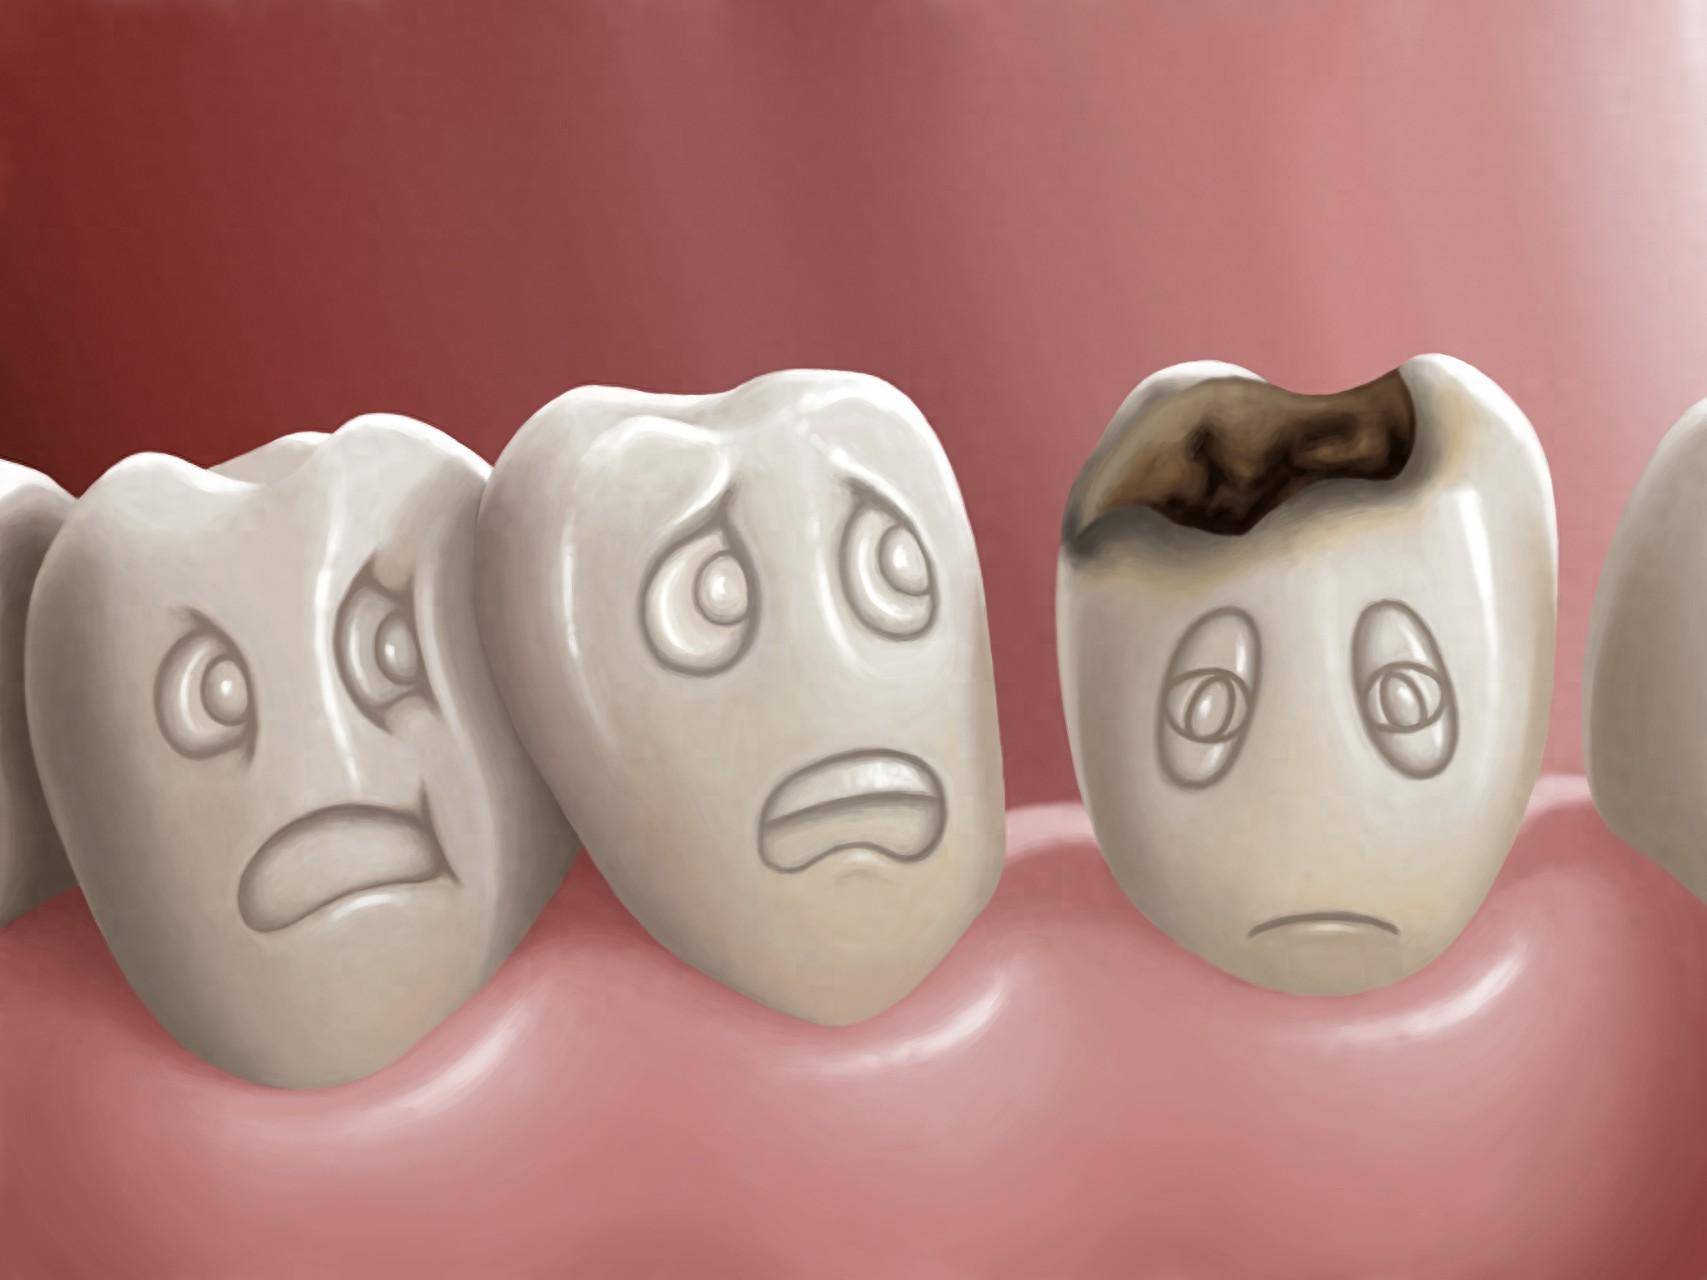 原创牙龈红肿出血可能是牙周炎犯了做好7个预防守护牙周壁垒